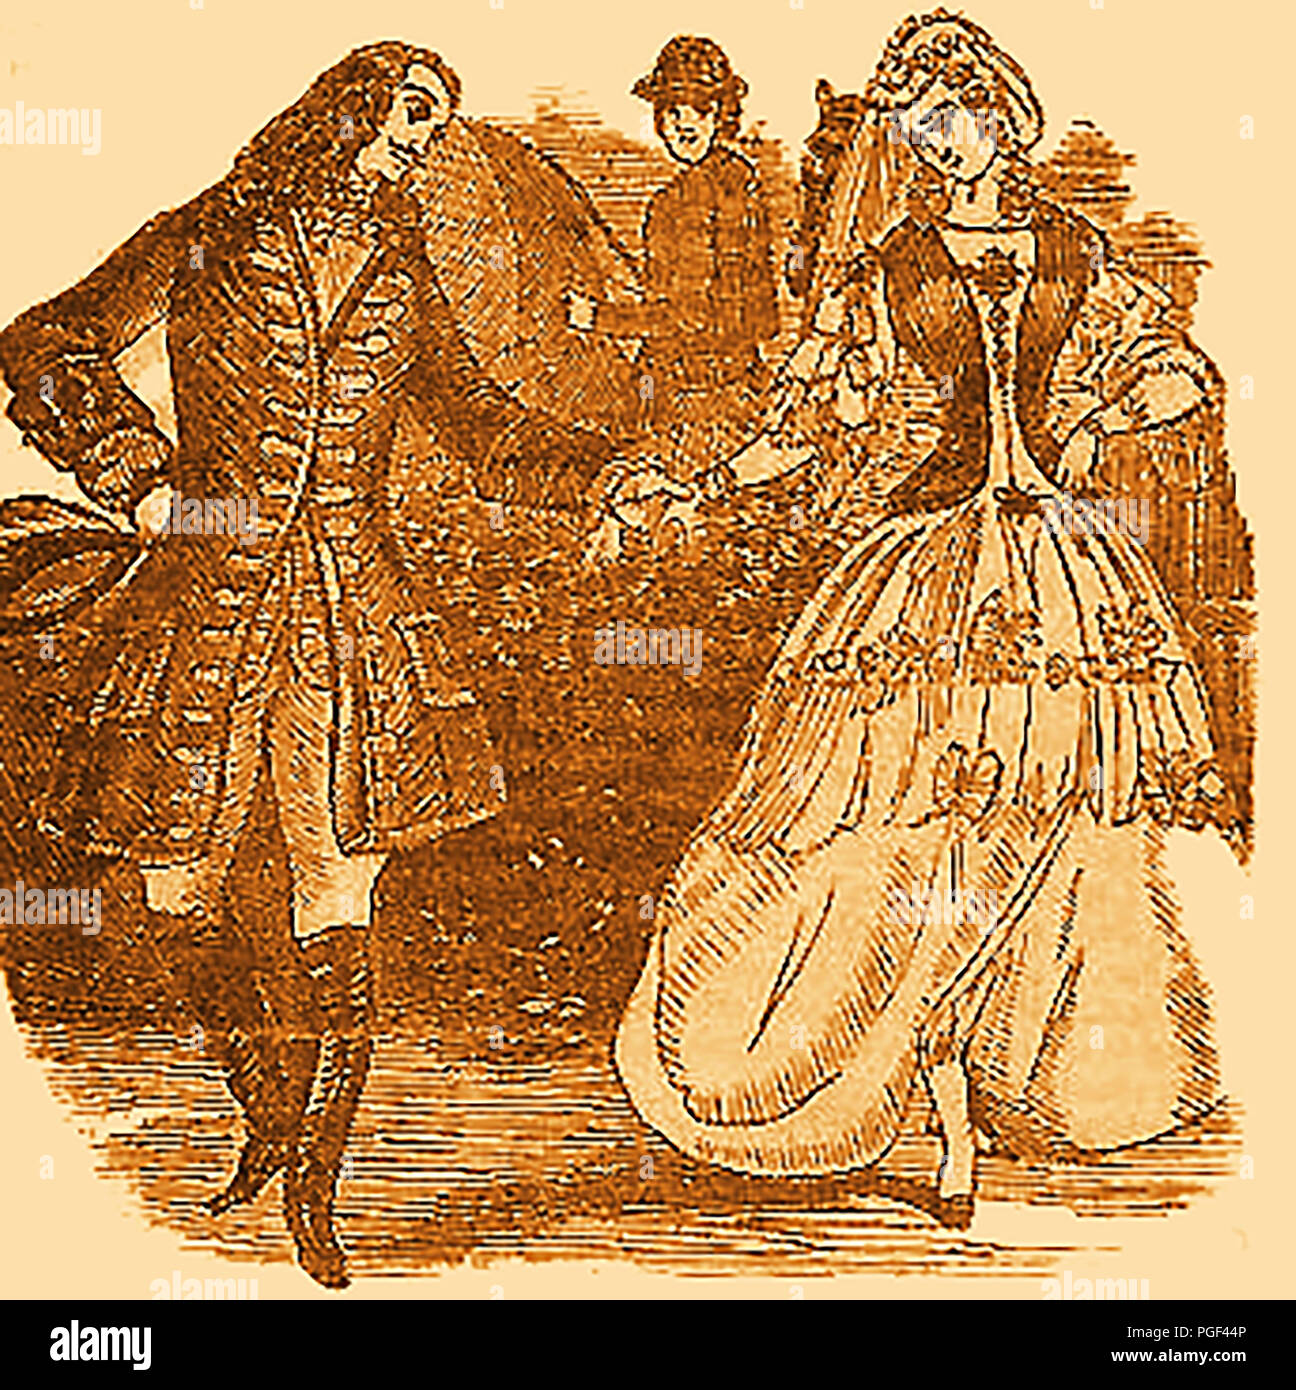 John'S ixteen String Jack'Rann (1750-1774) englischer Taschendieb, allgemeinen kriminellen und Wegelagerer für seine Exzentrik von Kleid mit Schnürung, Bändern, Federn und Blumen festgestellt. - Hier ist er zu sehen Wegelagerer John Rann' 16 string Jack'beschmutzt Tanzen durch eine schlüsselfertige (gefängniswärter) - Vom "Leben auf der Straße" oder "Claude, Turpin, und Jack" 1800 veröffentlicht. Stockfoto